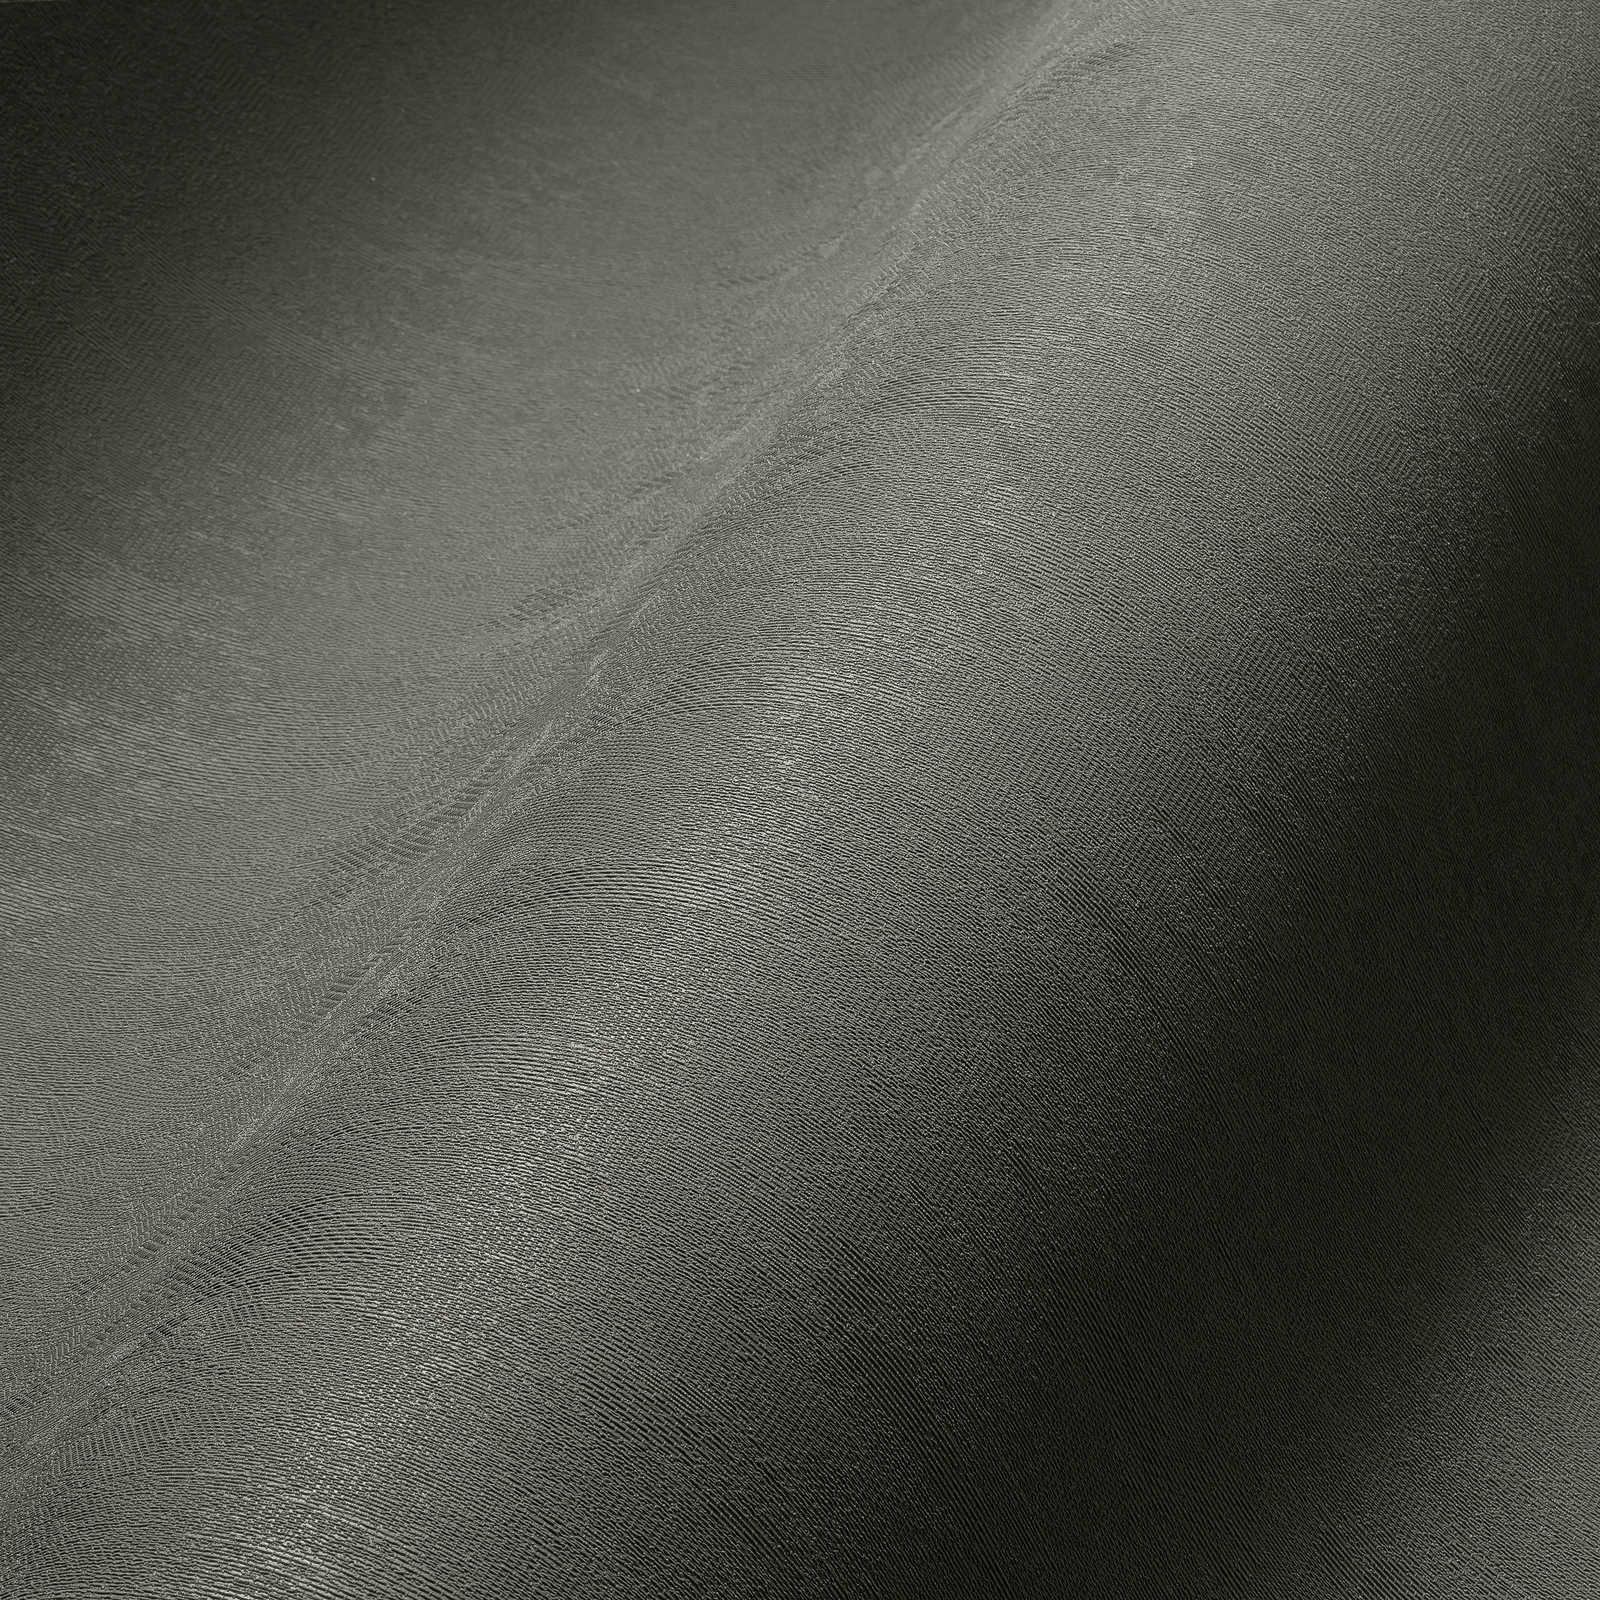             Vliesbehang donker kaki effen, gesatineerd - grijs
        